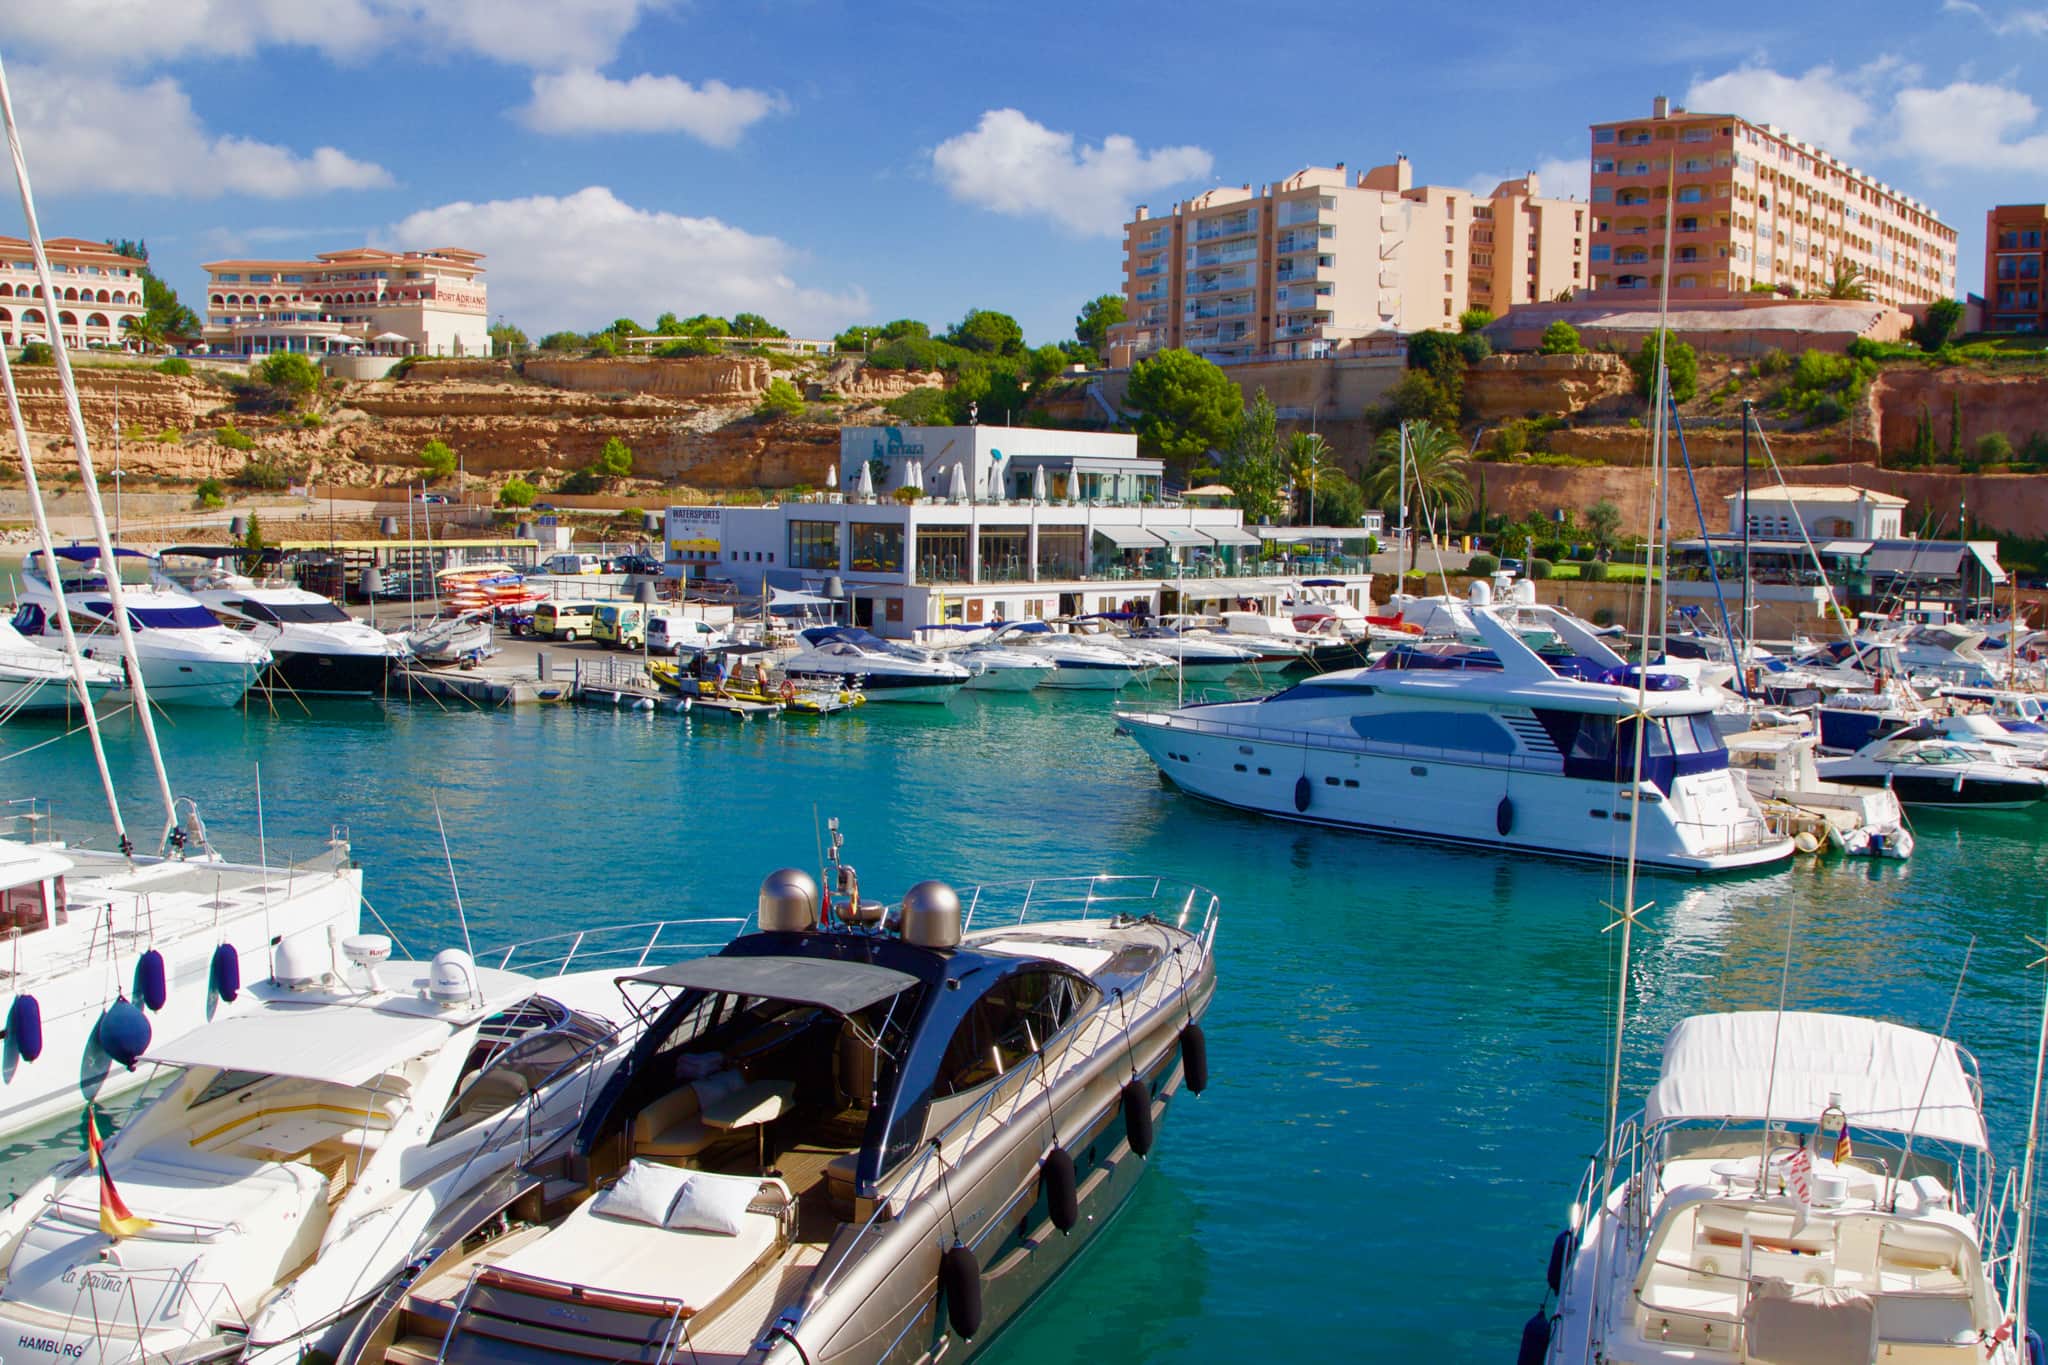 Der edle Yachthafen Port Adriano auf Mallorca: Hier liegen einige der größten Yachten des Mittelmeers vor Anker. Foto: Sascha Tegtmeyer